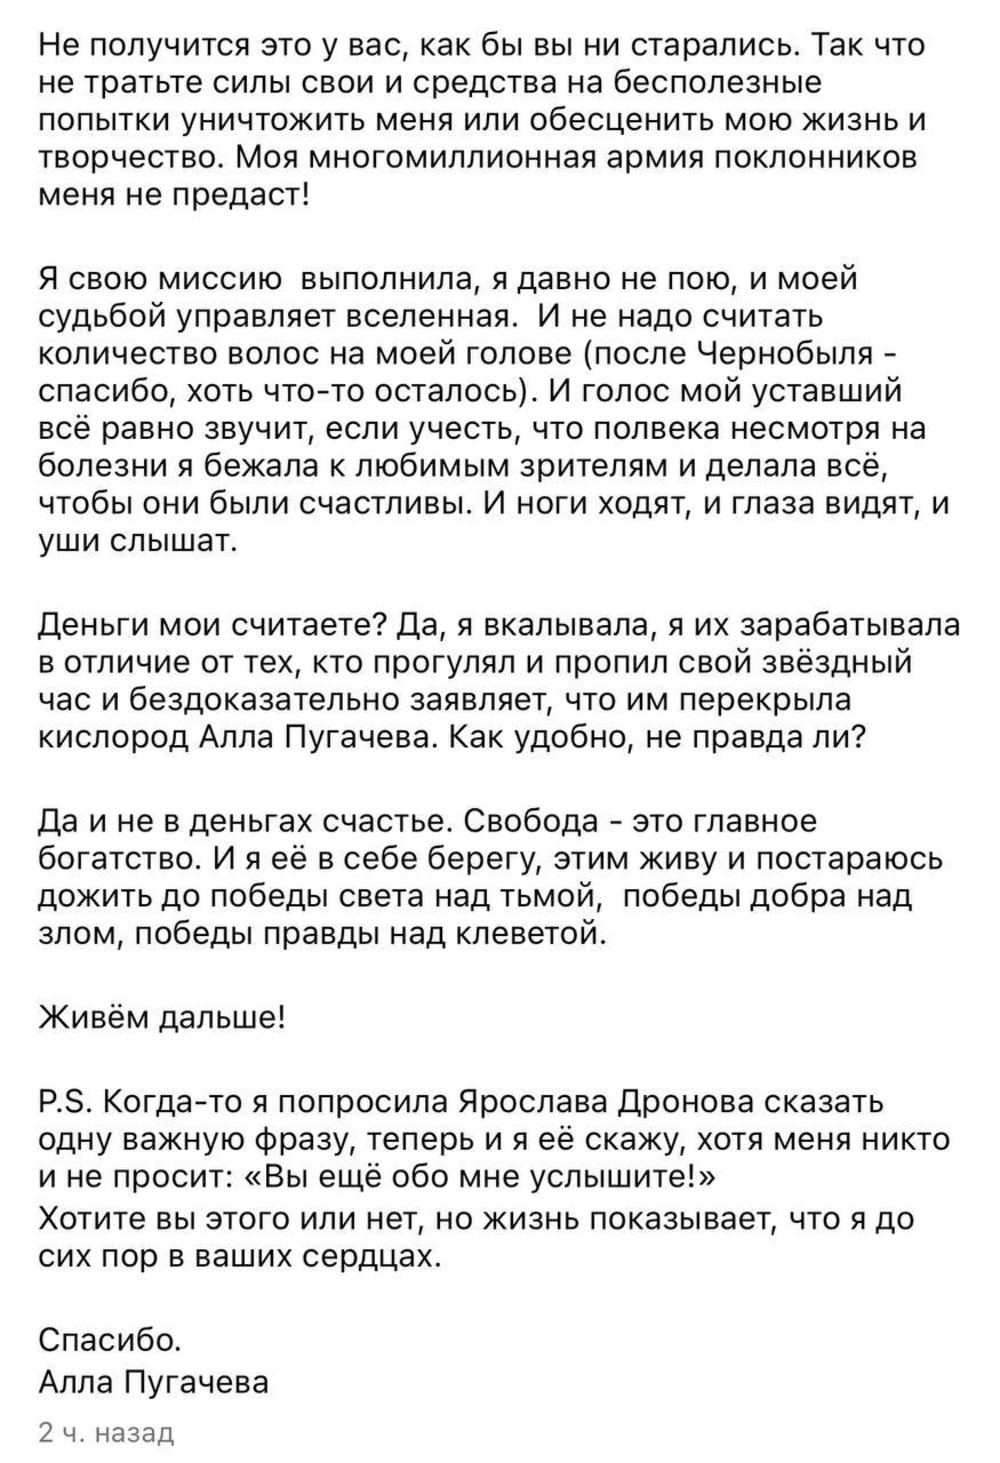 «Вы ещё обо мне услышите!»: Алла Пугачёва раскритиковала своих «клеветников и завистников»